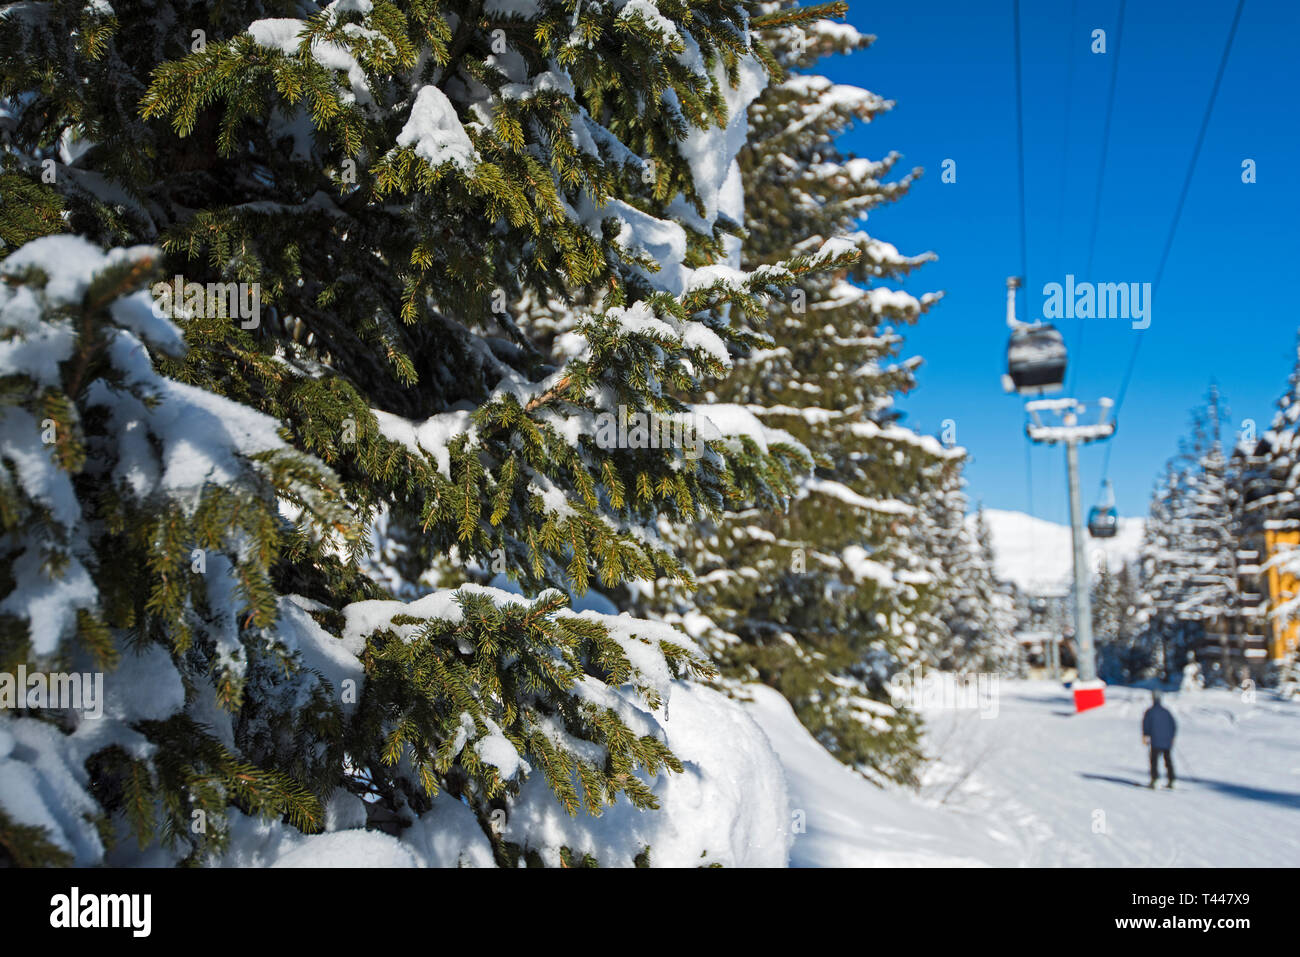 Vista panoramica di una coperta di neve delle piste da sci e gli alberi in una località alpina con funivia sollevare e hotel Foto Stock